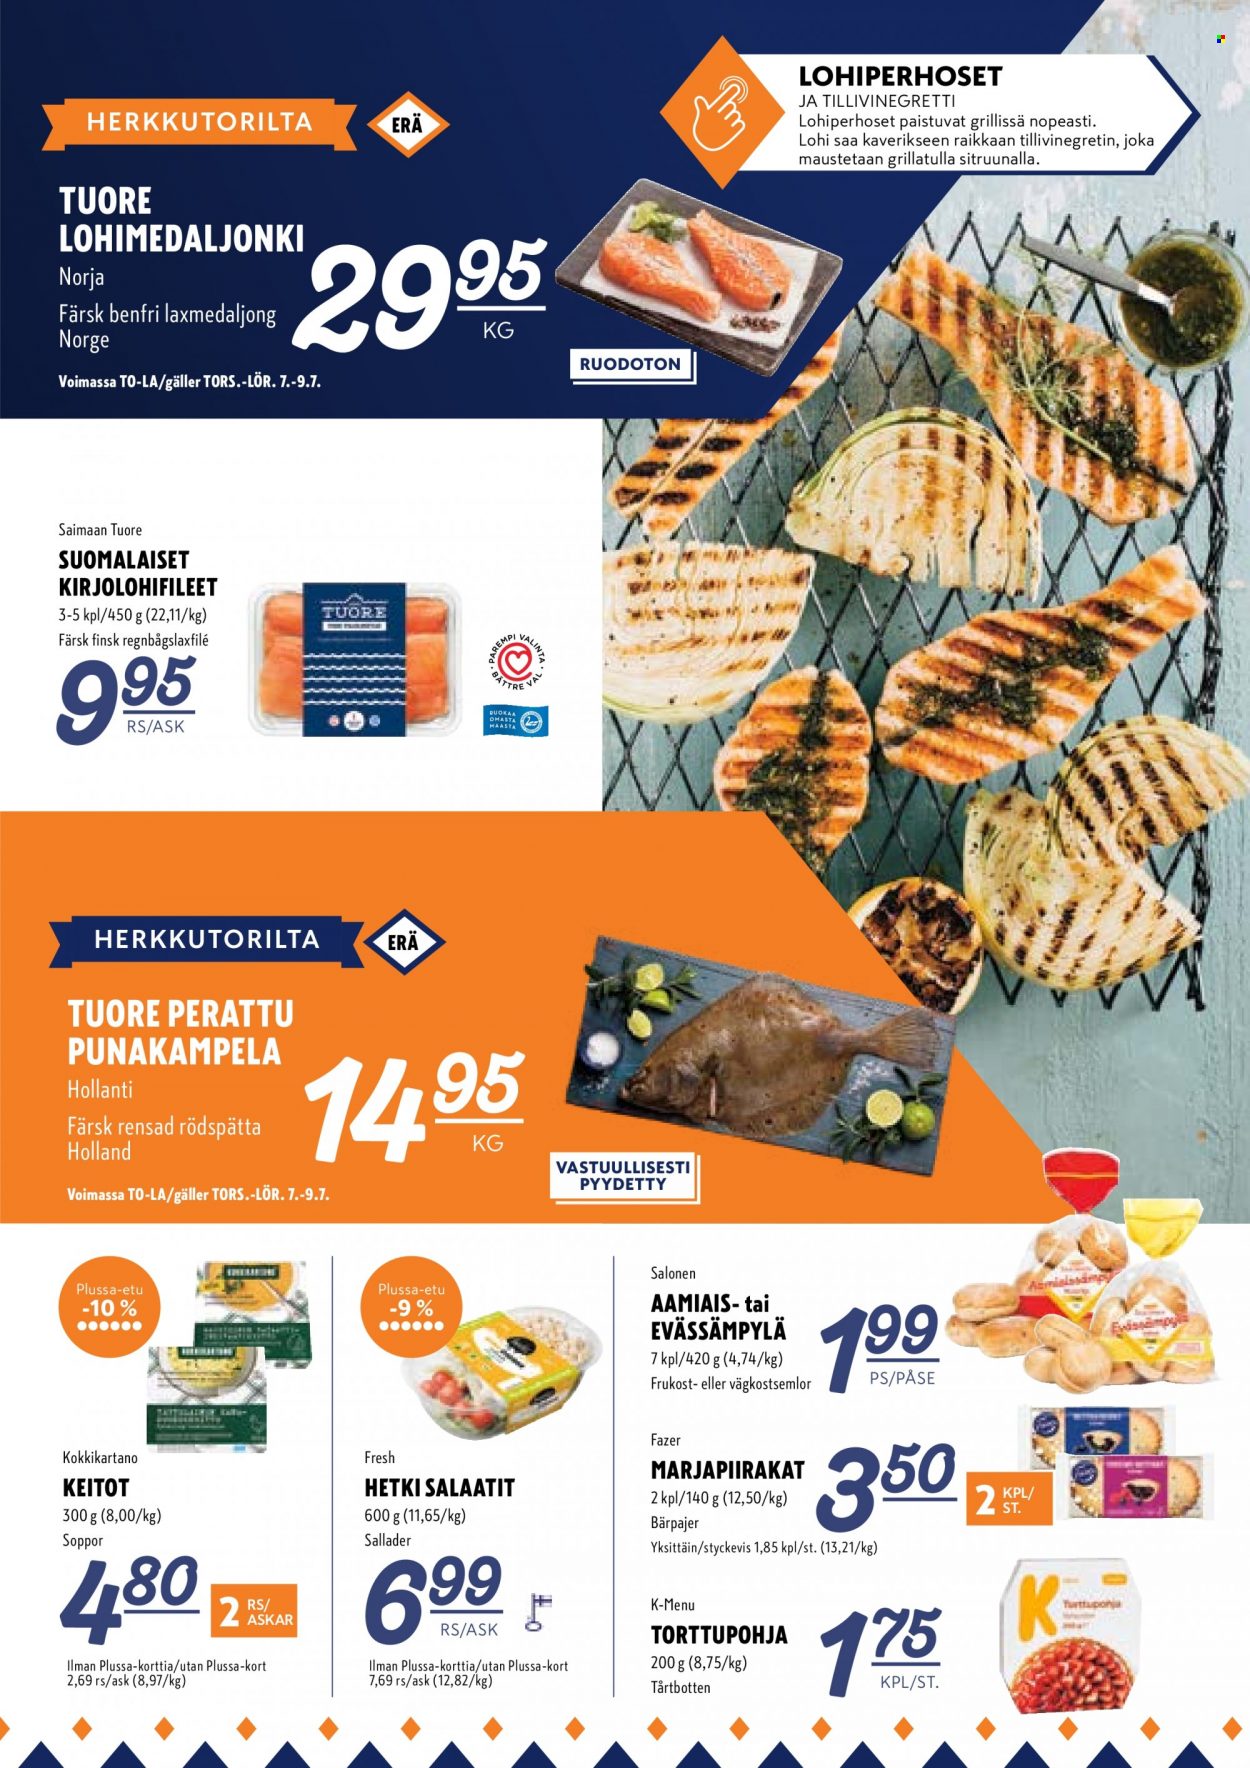 K-Supermarket tarjouslehti  - 07.07.2022 - 10.07.2022.